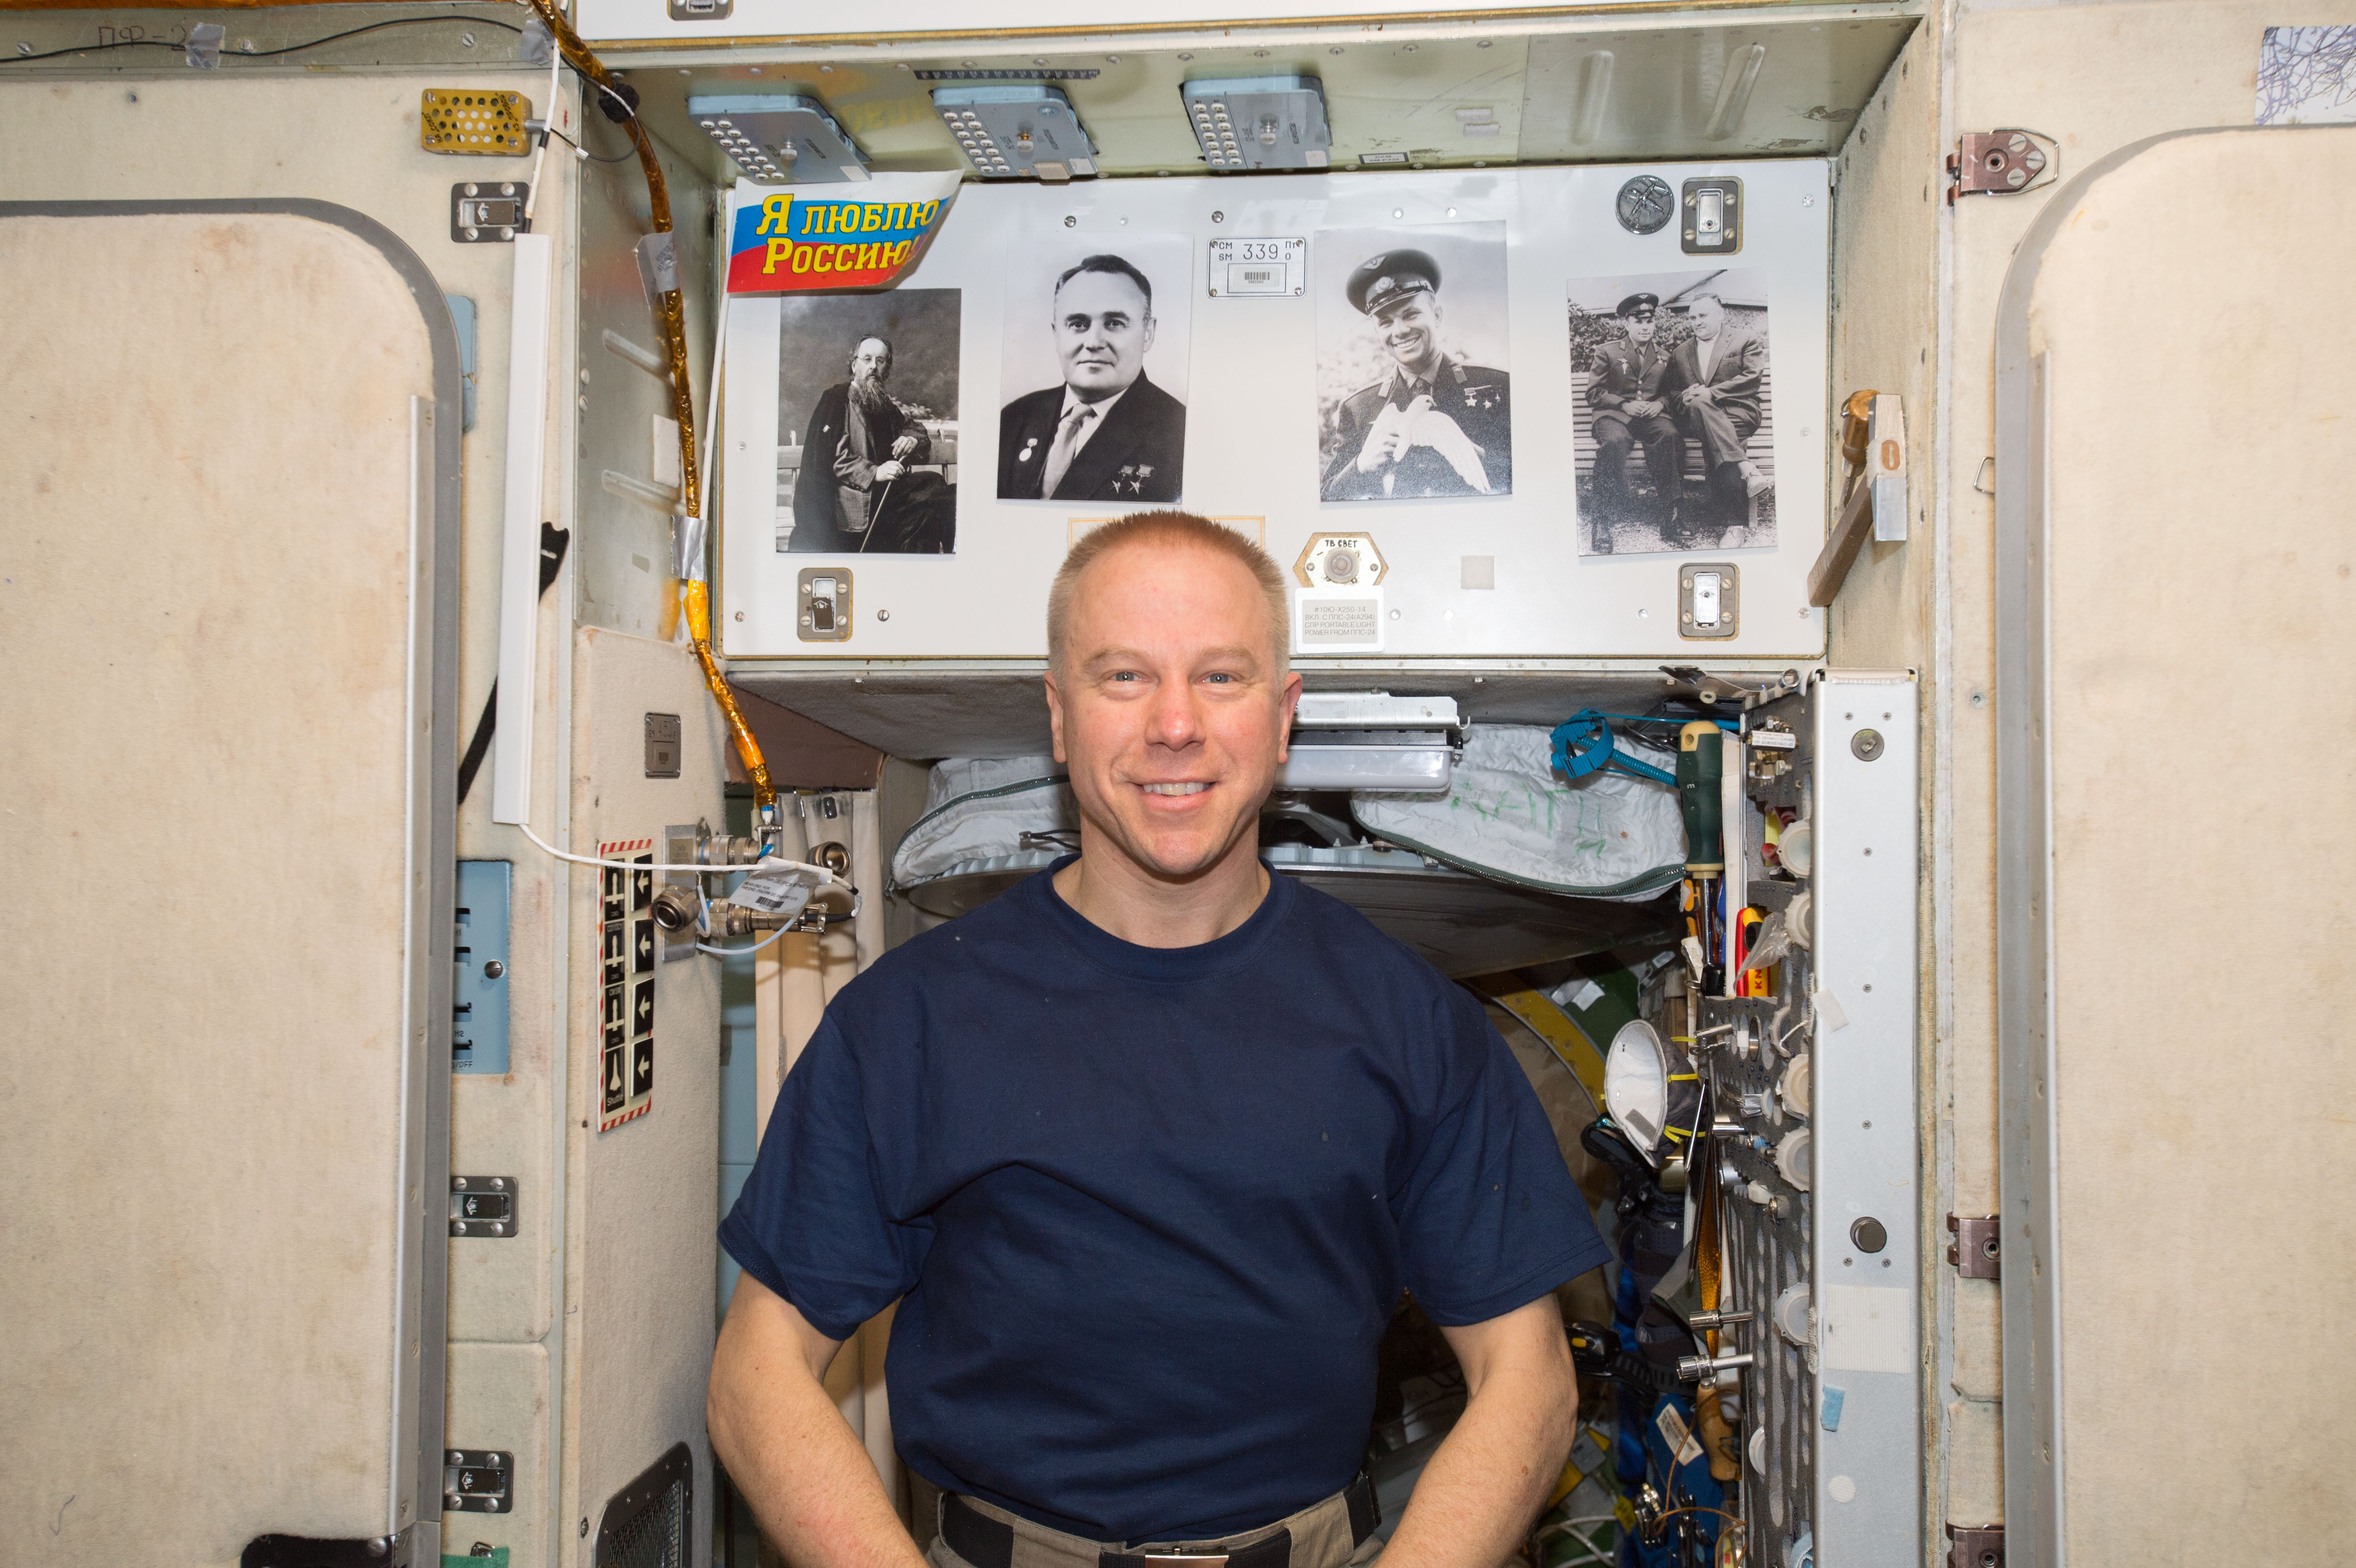 ISS-47 Tim Kopra in the Zvezda Service Module